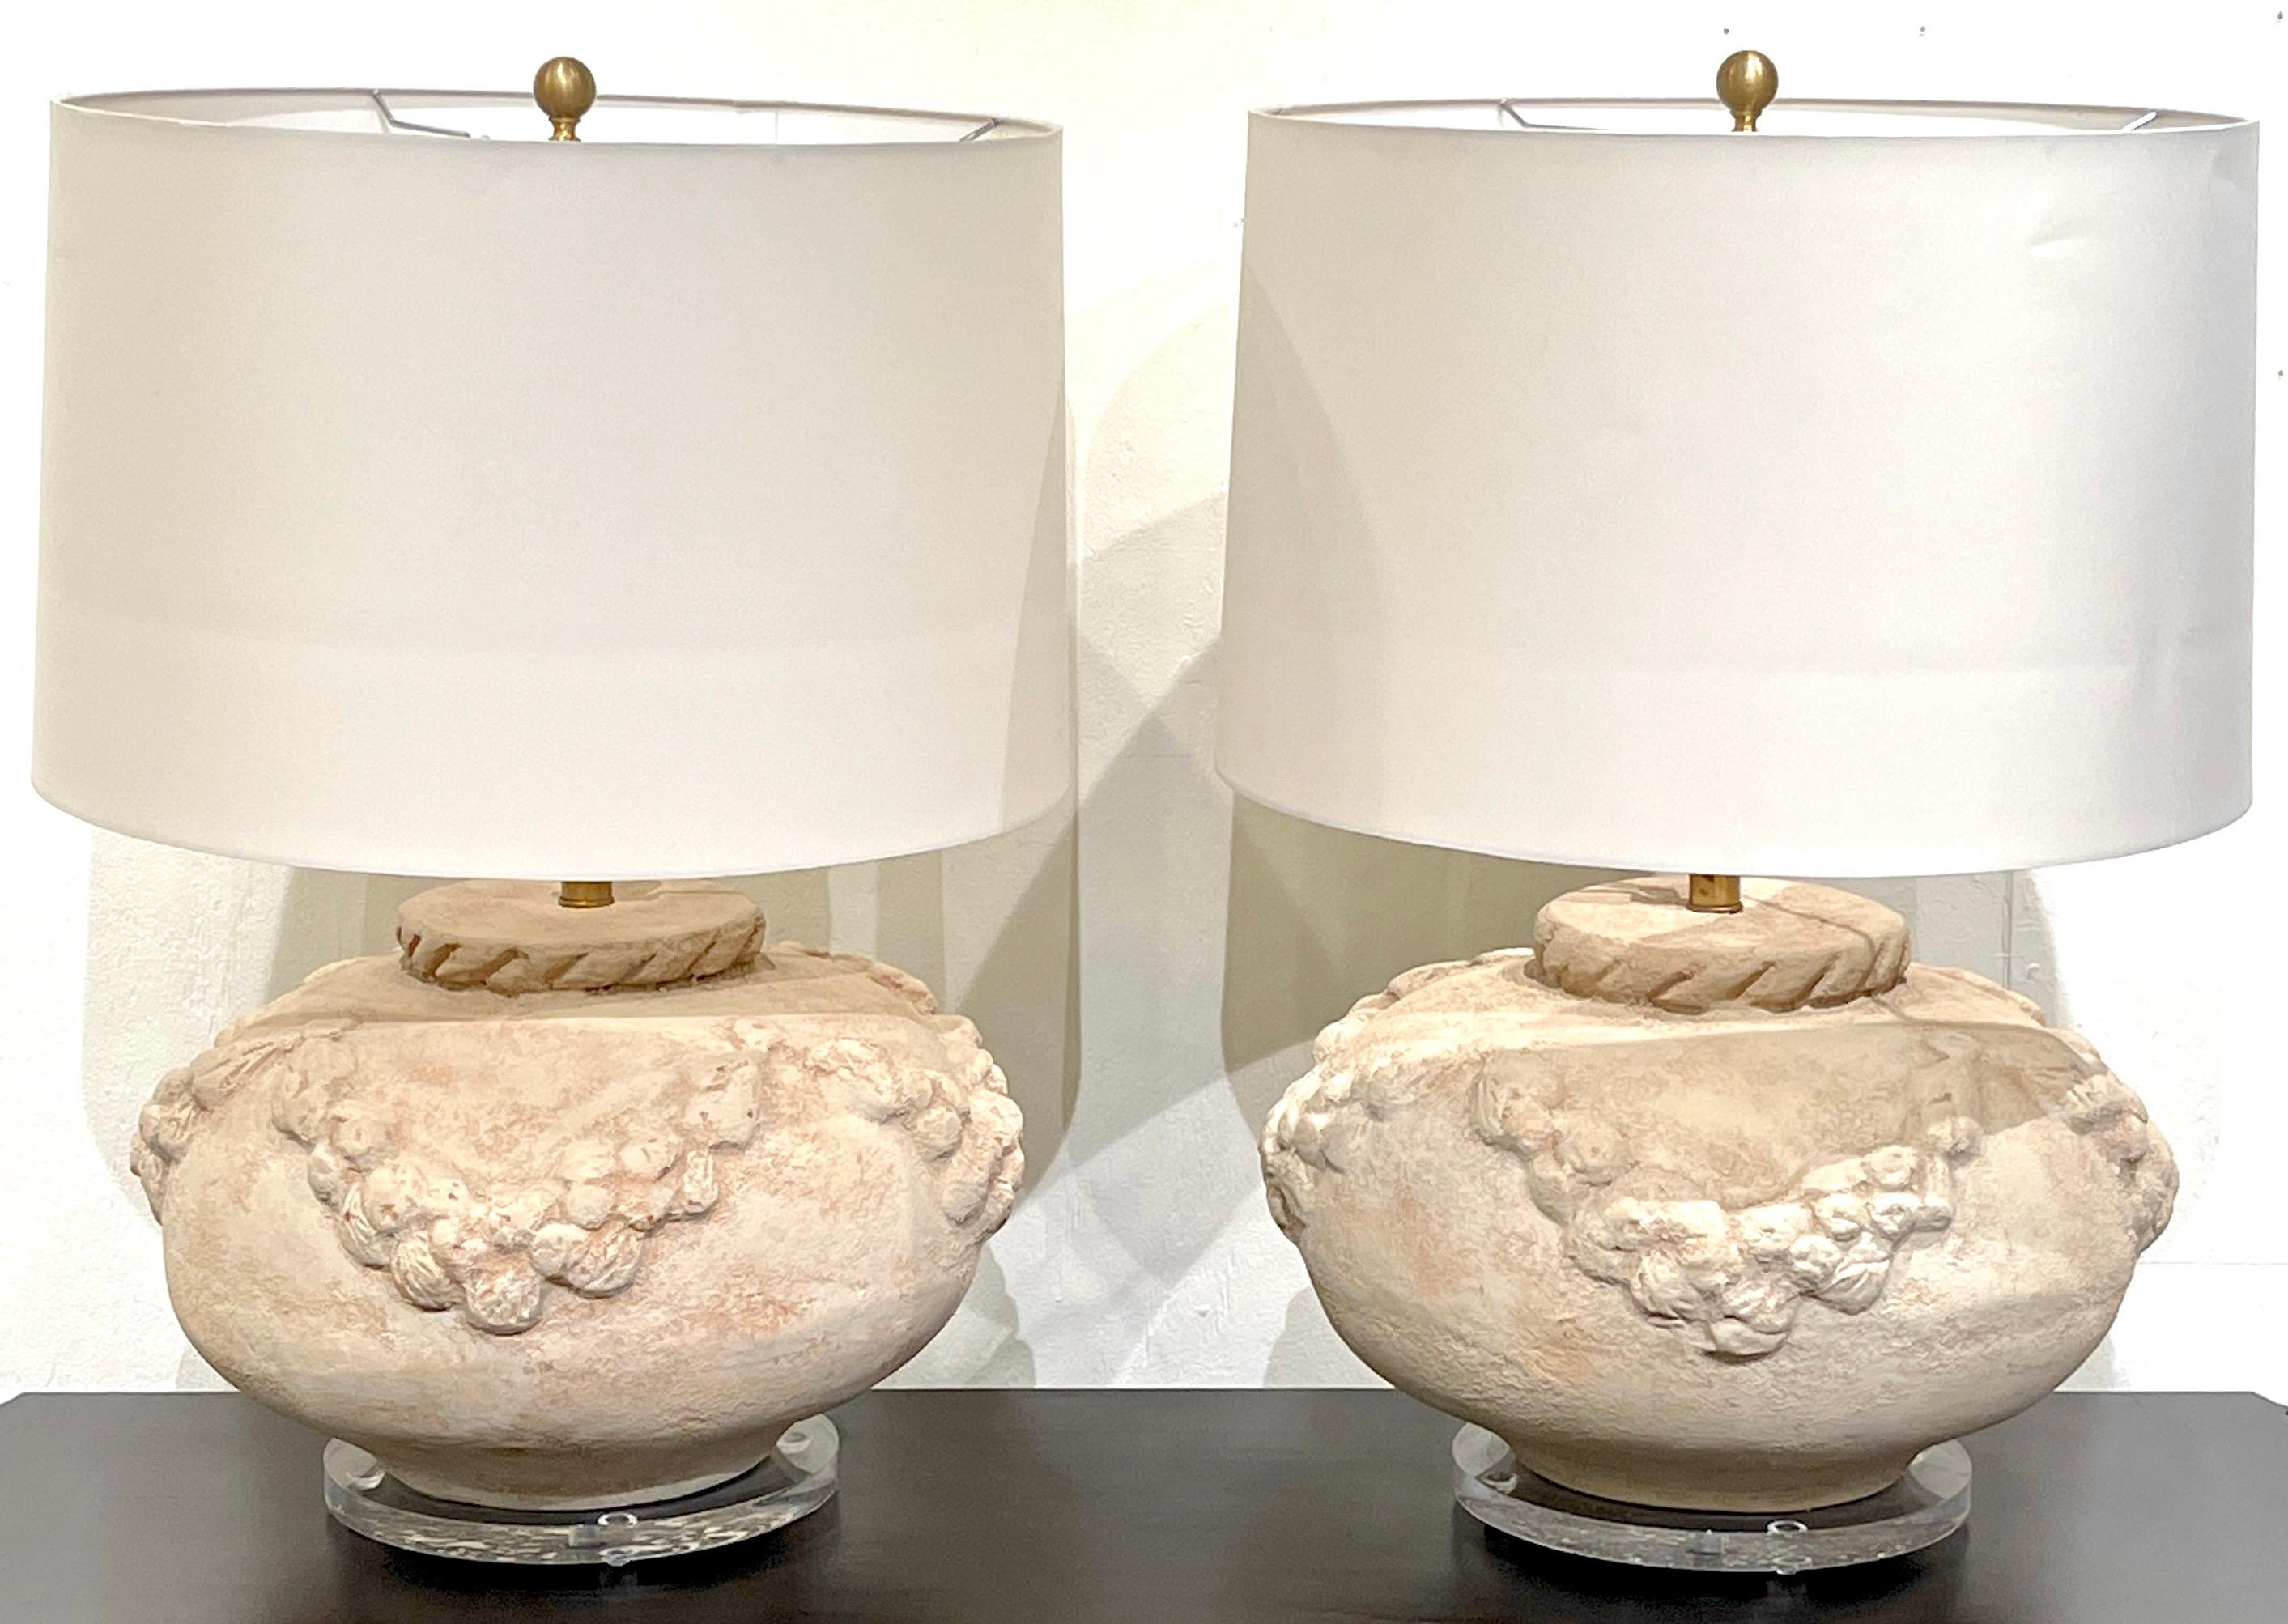 Paire de lampes néoclassiques italiennes en terre cuite et lucite 
Italie, Circa 1980

Chacun est un vase substantiel décoré d'une guirlande continue, monté sur un piédestal en lucite de 10 pouces de diamètre. Illustré avec des abat-jour de 19